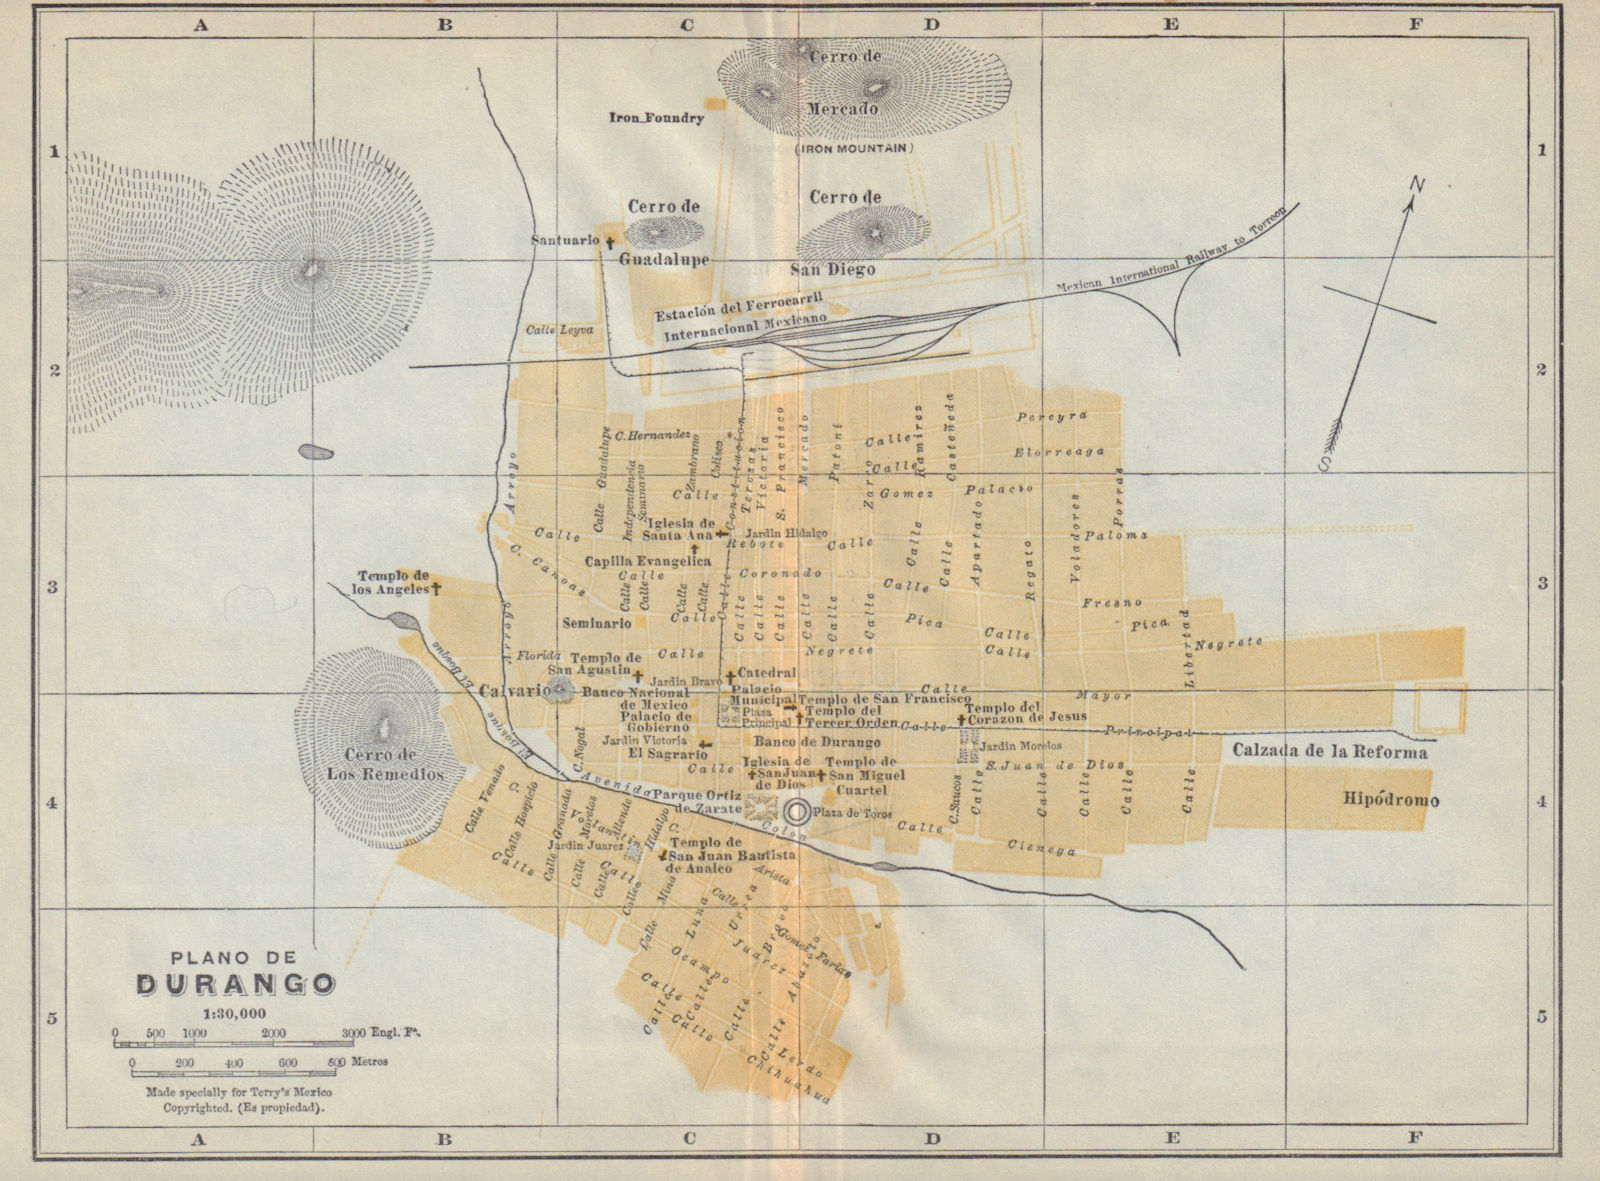 Plano de VICTORIA DE DURANGO, Mexico. Mapa de la ciudad. City/town plan 1938